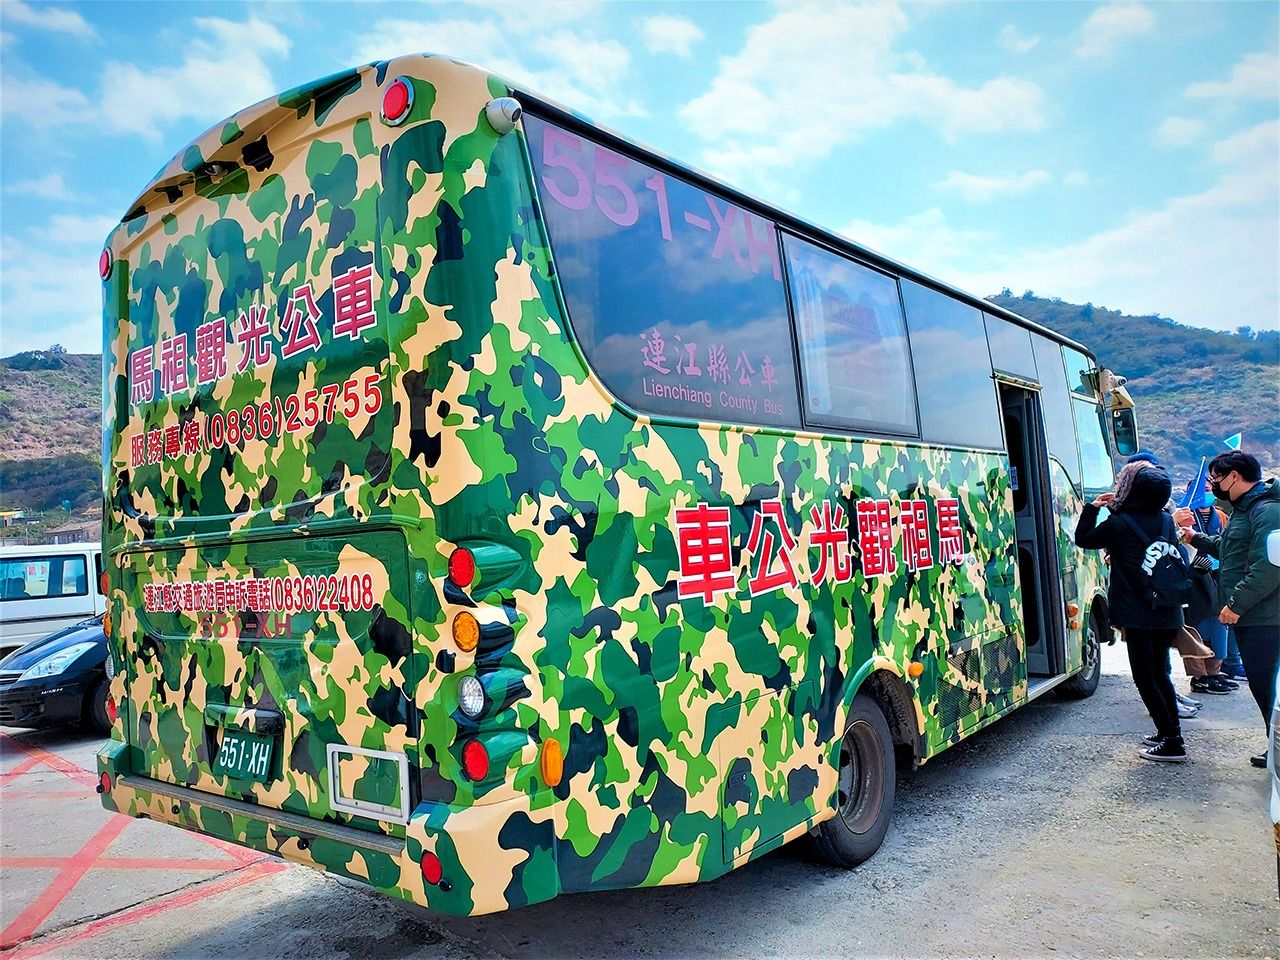 東莒島では観光バスも迷彩色であった。